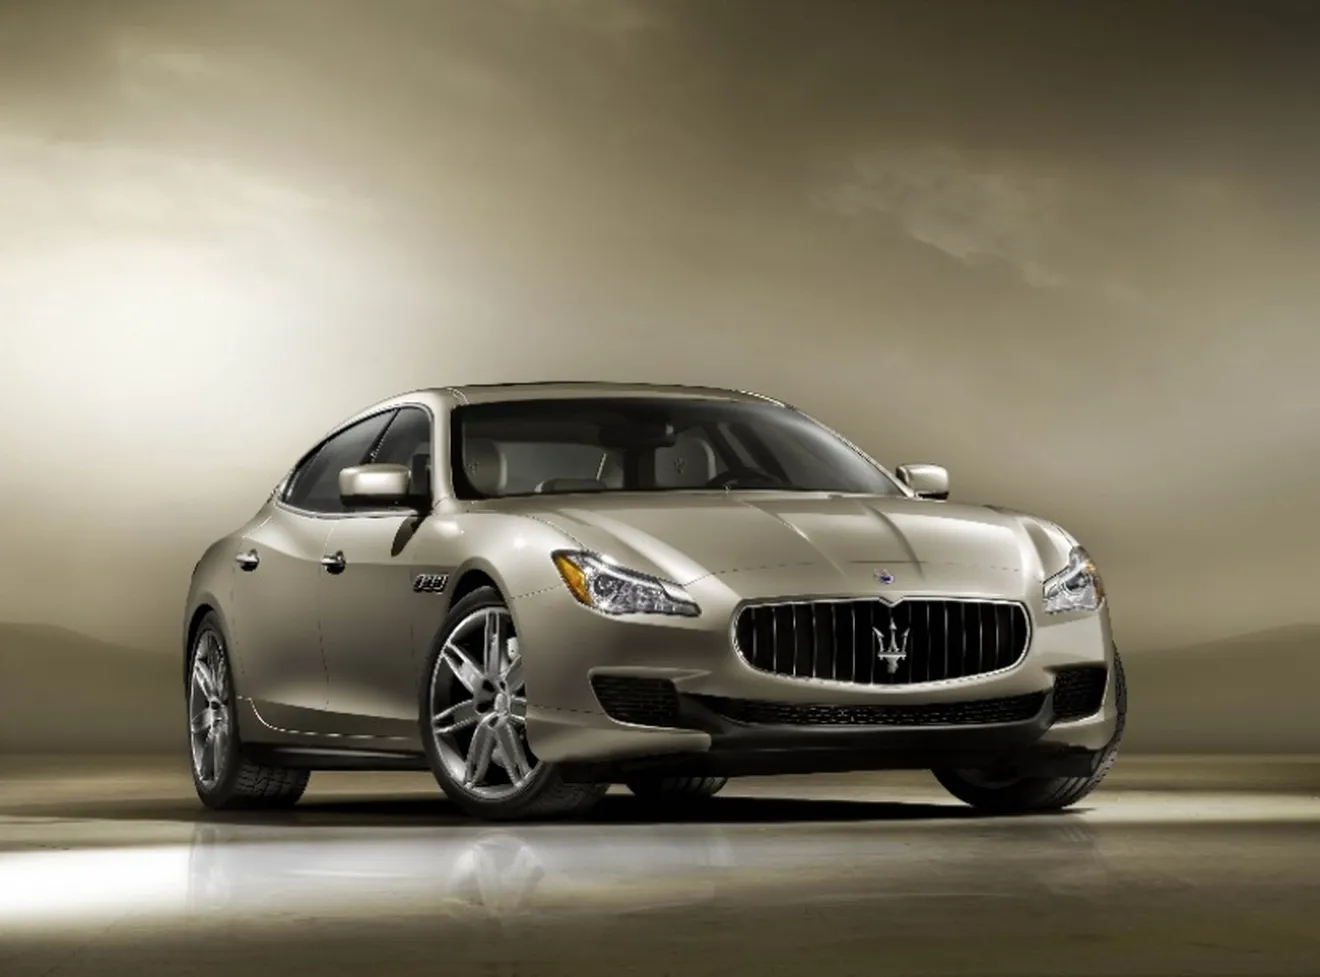 Maserati Quattroporte 2013, ahora en vídeo